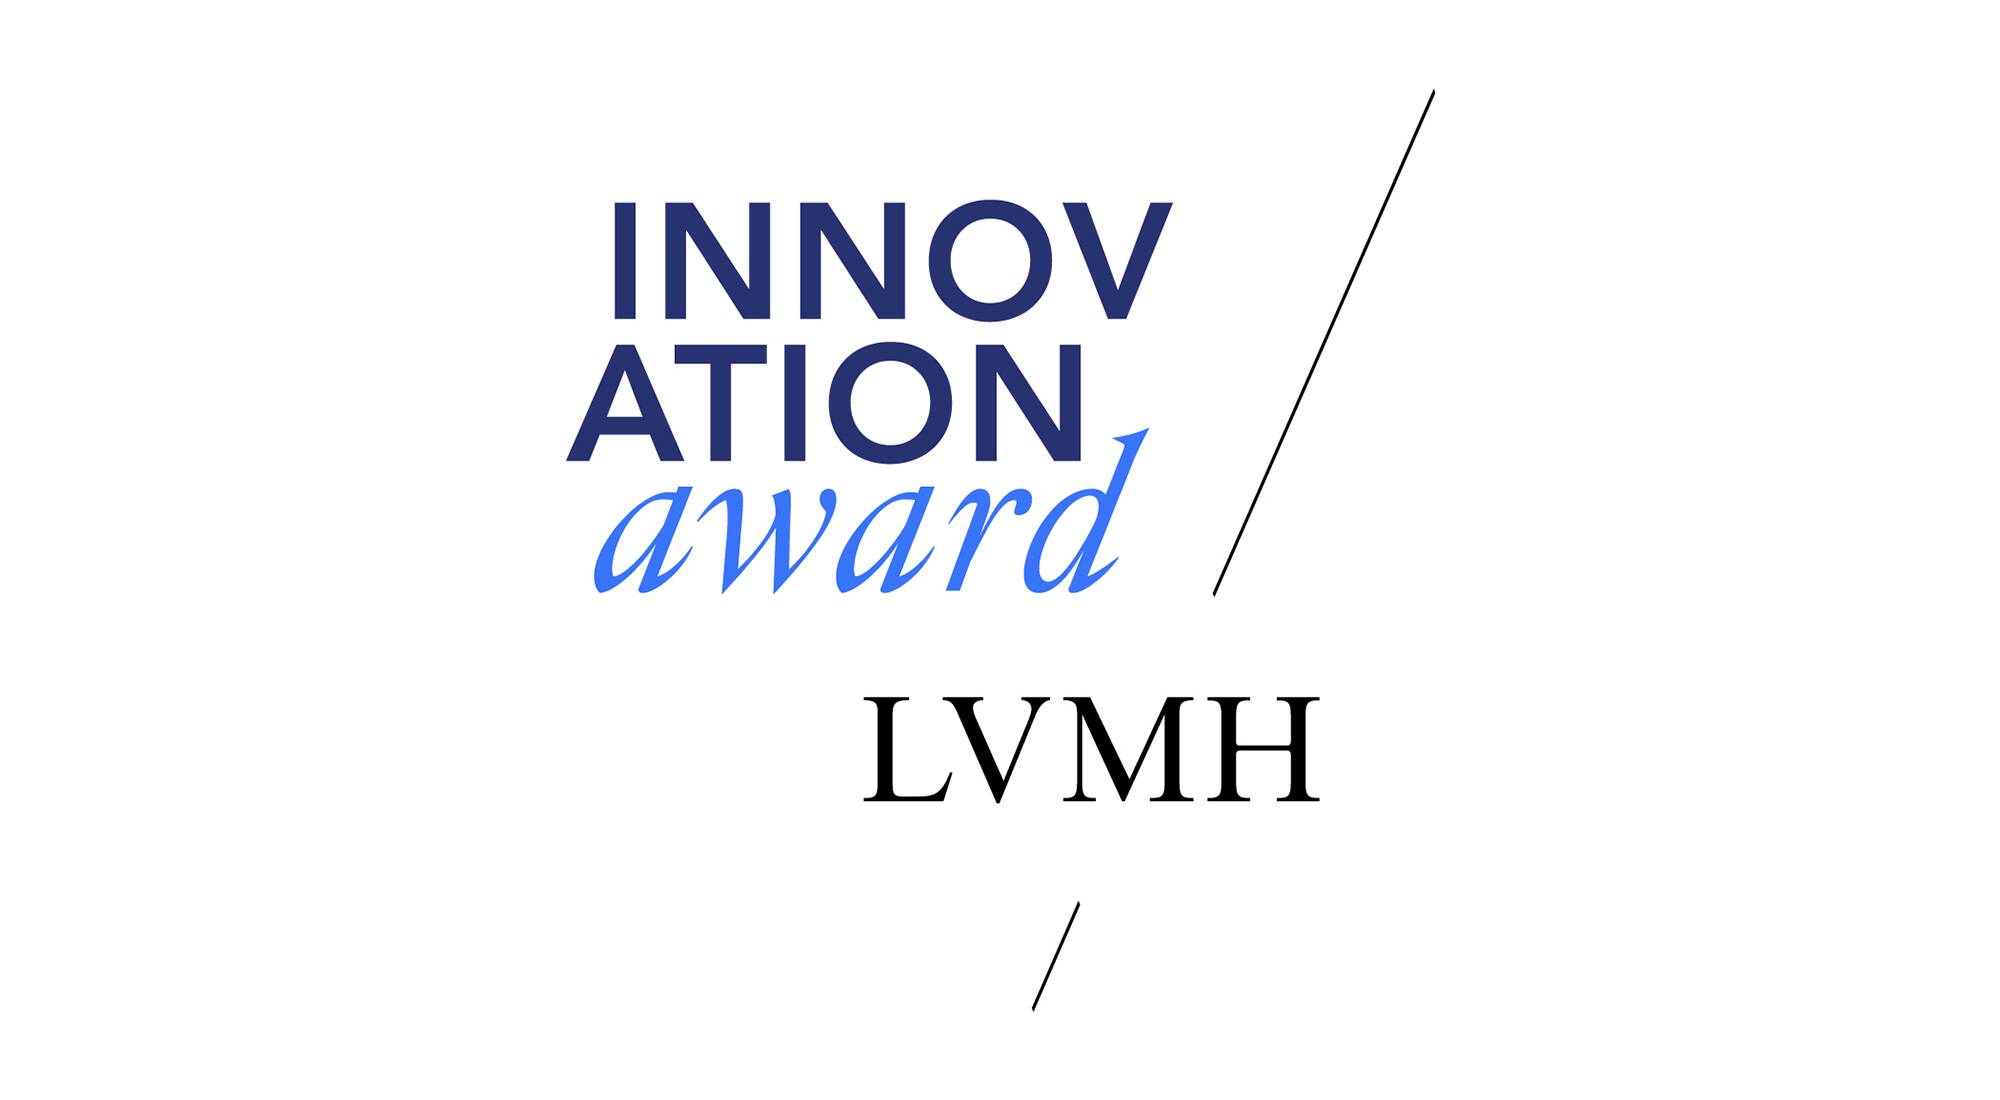 lvmh innovation awards